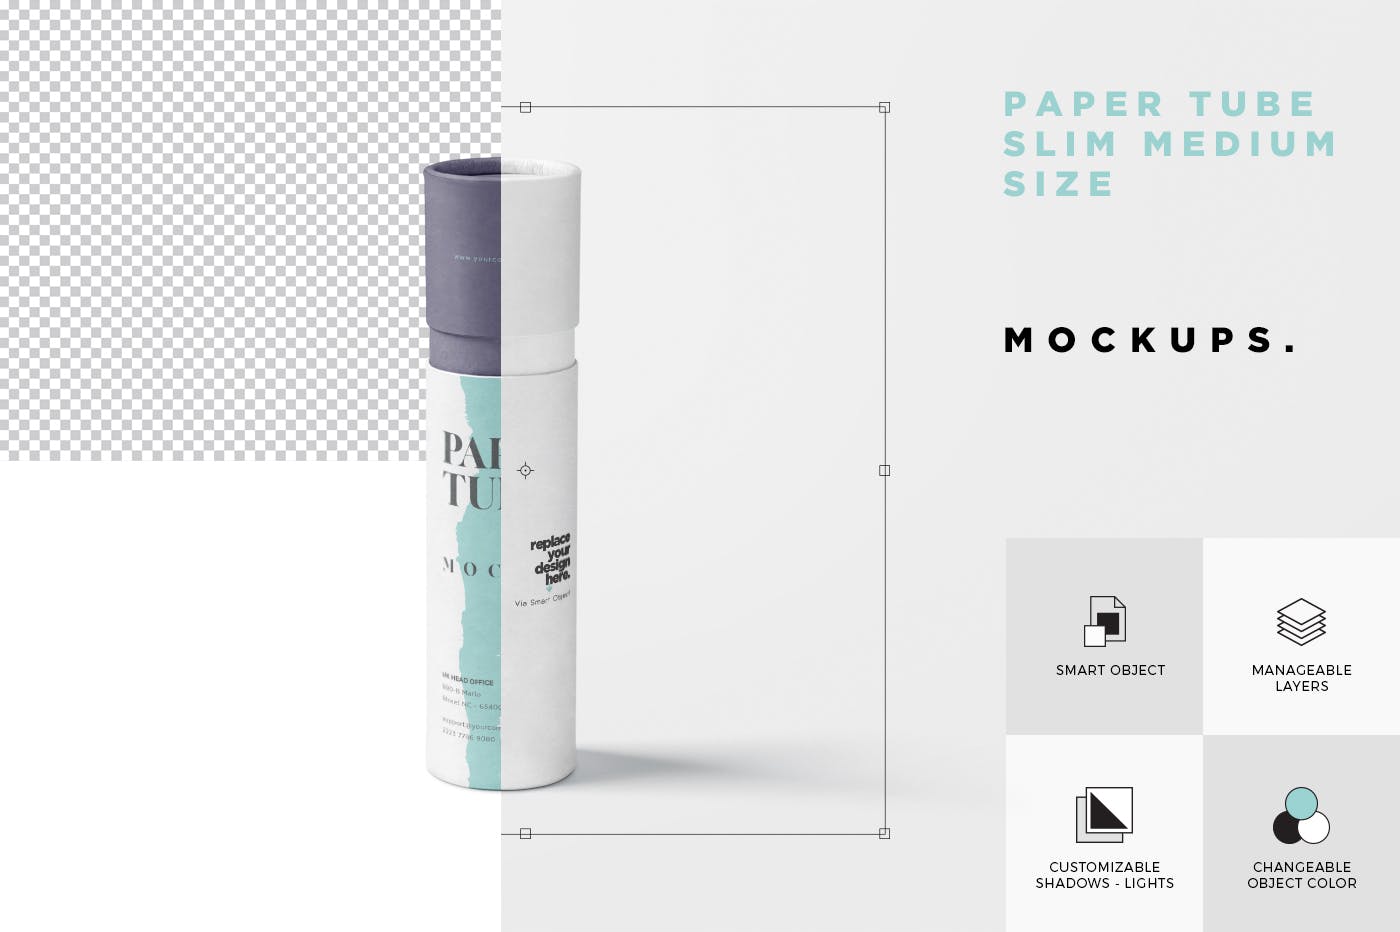 长纸管包装外观设计非凡图库精选模板 Paper Tube Mockup Set – Slim Medium Size插图(6)